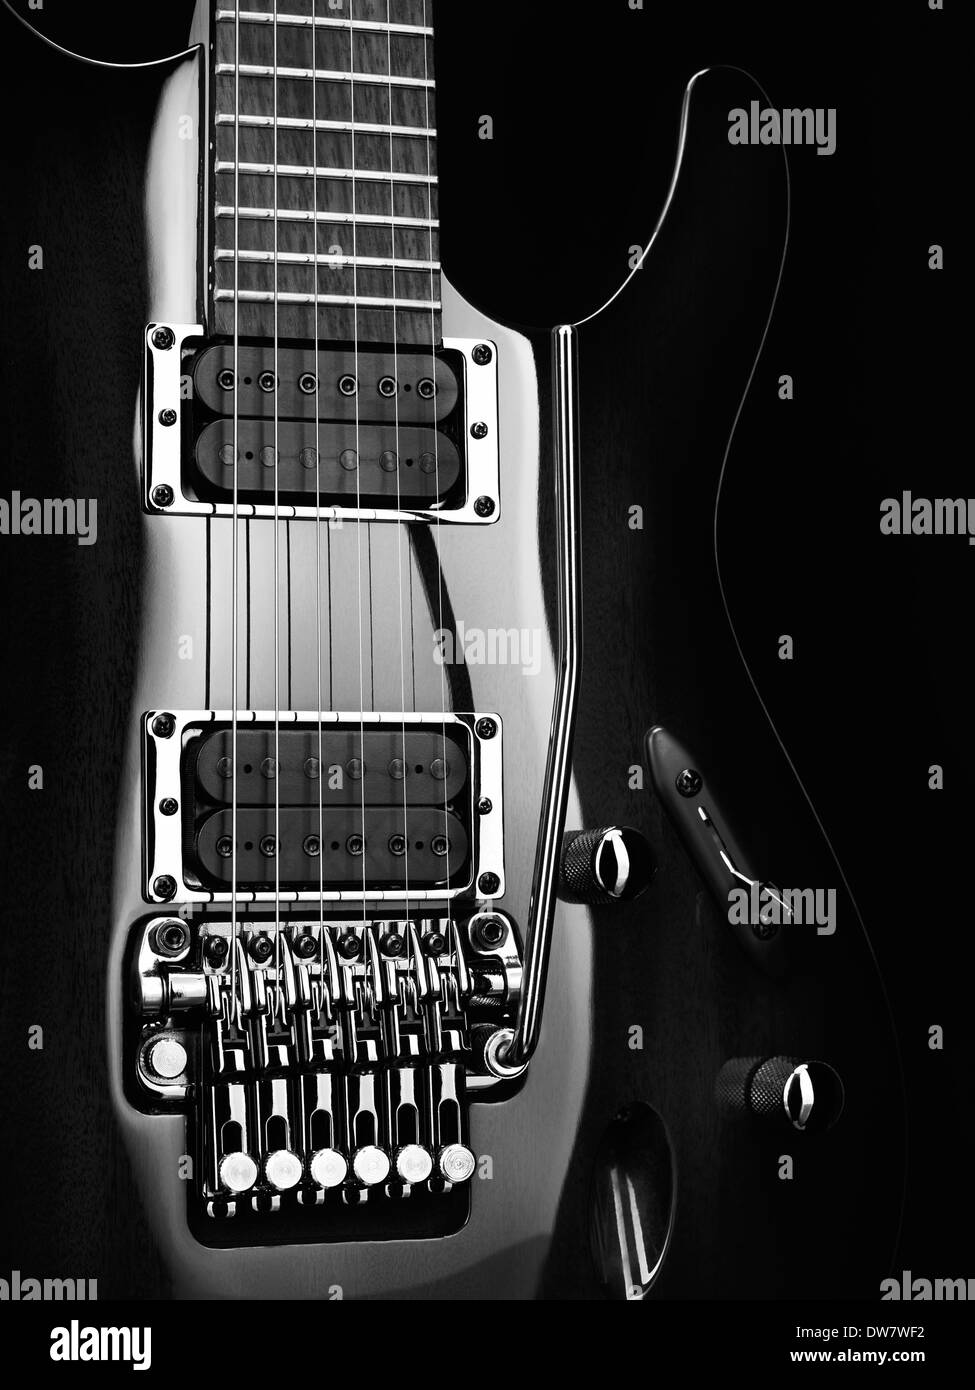 Gros plan artistique d'une guitare électrique Ibanez avec parties chromées sur fond noir photo en noir et blanc Banque D'Images